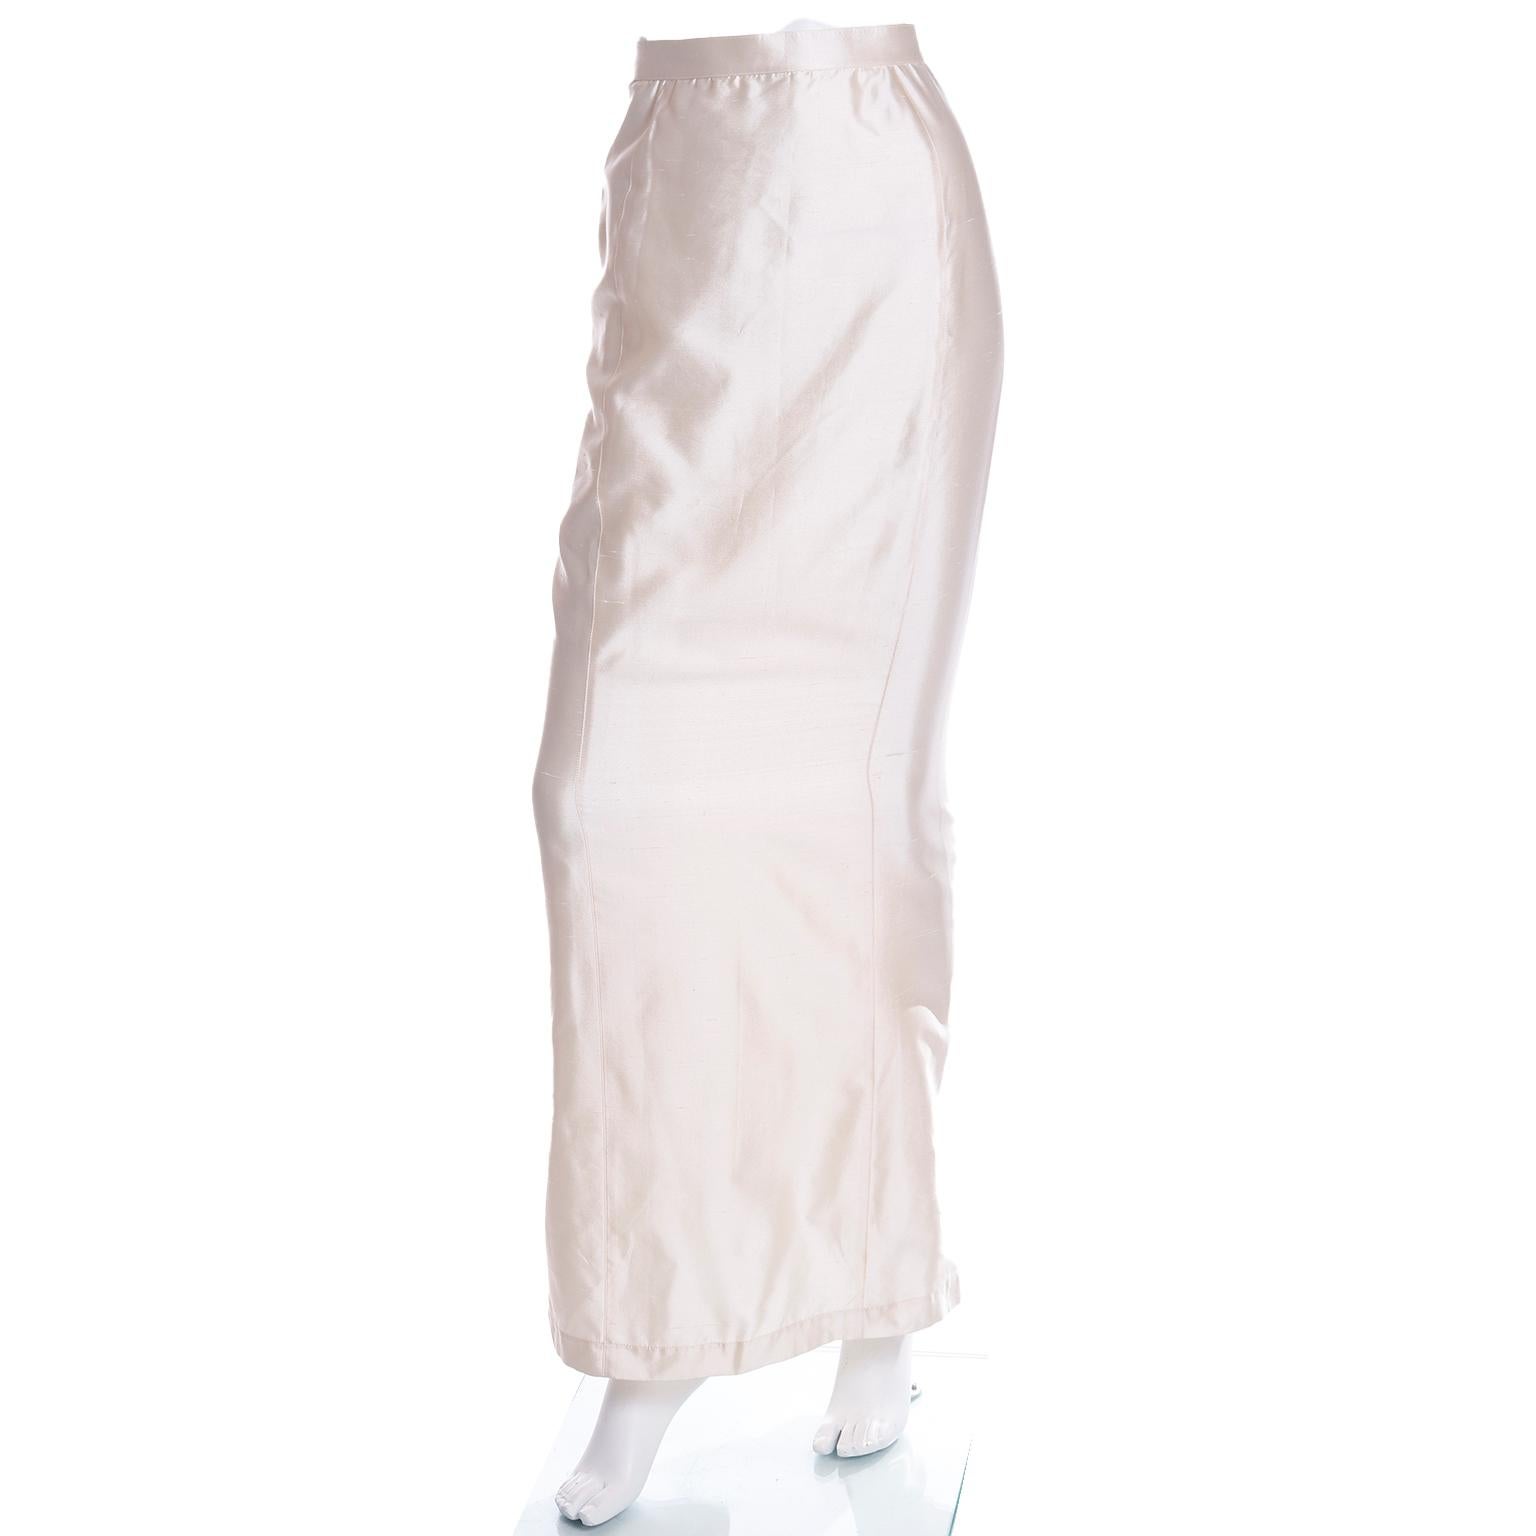 Thierry Mugler Cream Silk 2pc Evening Dress Gown Alternative Jacket & Long Skirt 1